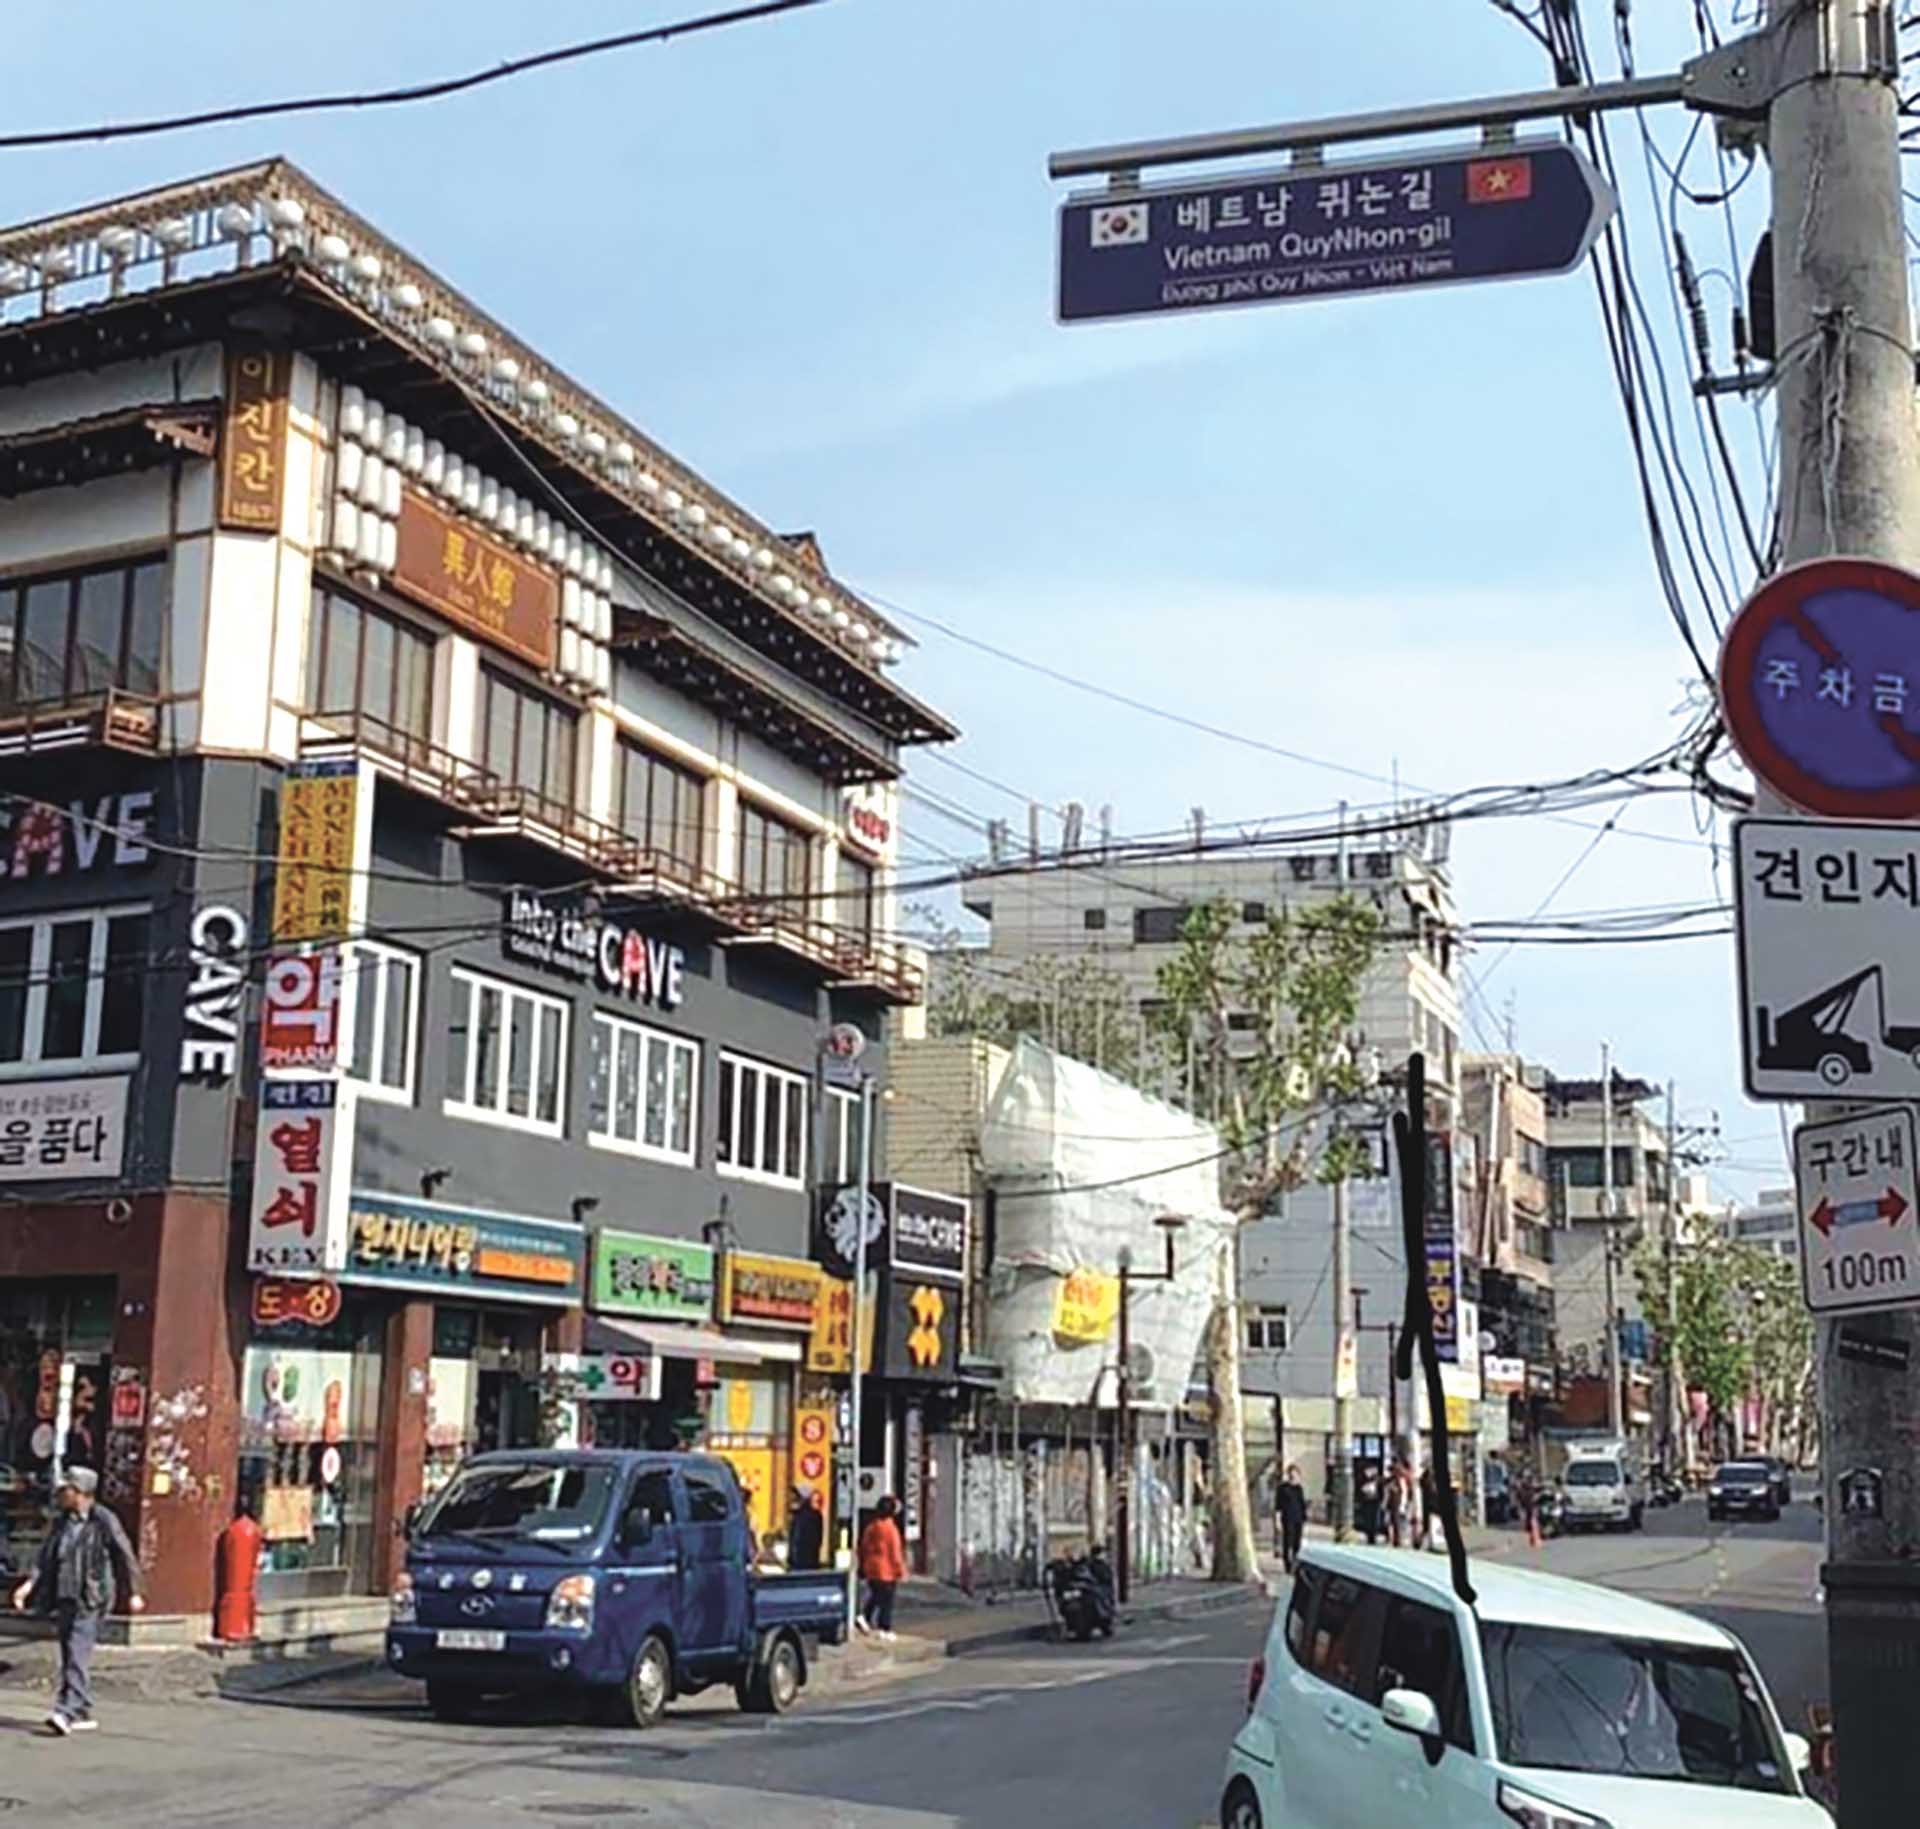 Đường phố Quy Nhơn trong lòng thành phố Seoul, Hàn Quốc. (Ảnh: thanhnien.vn)